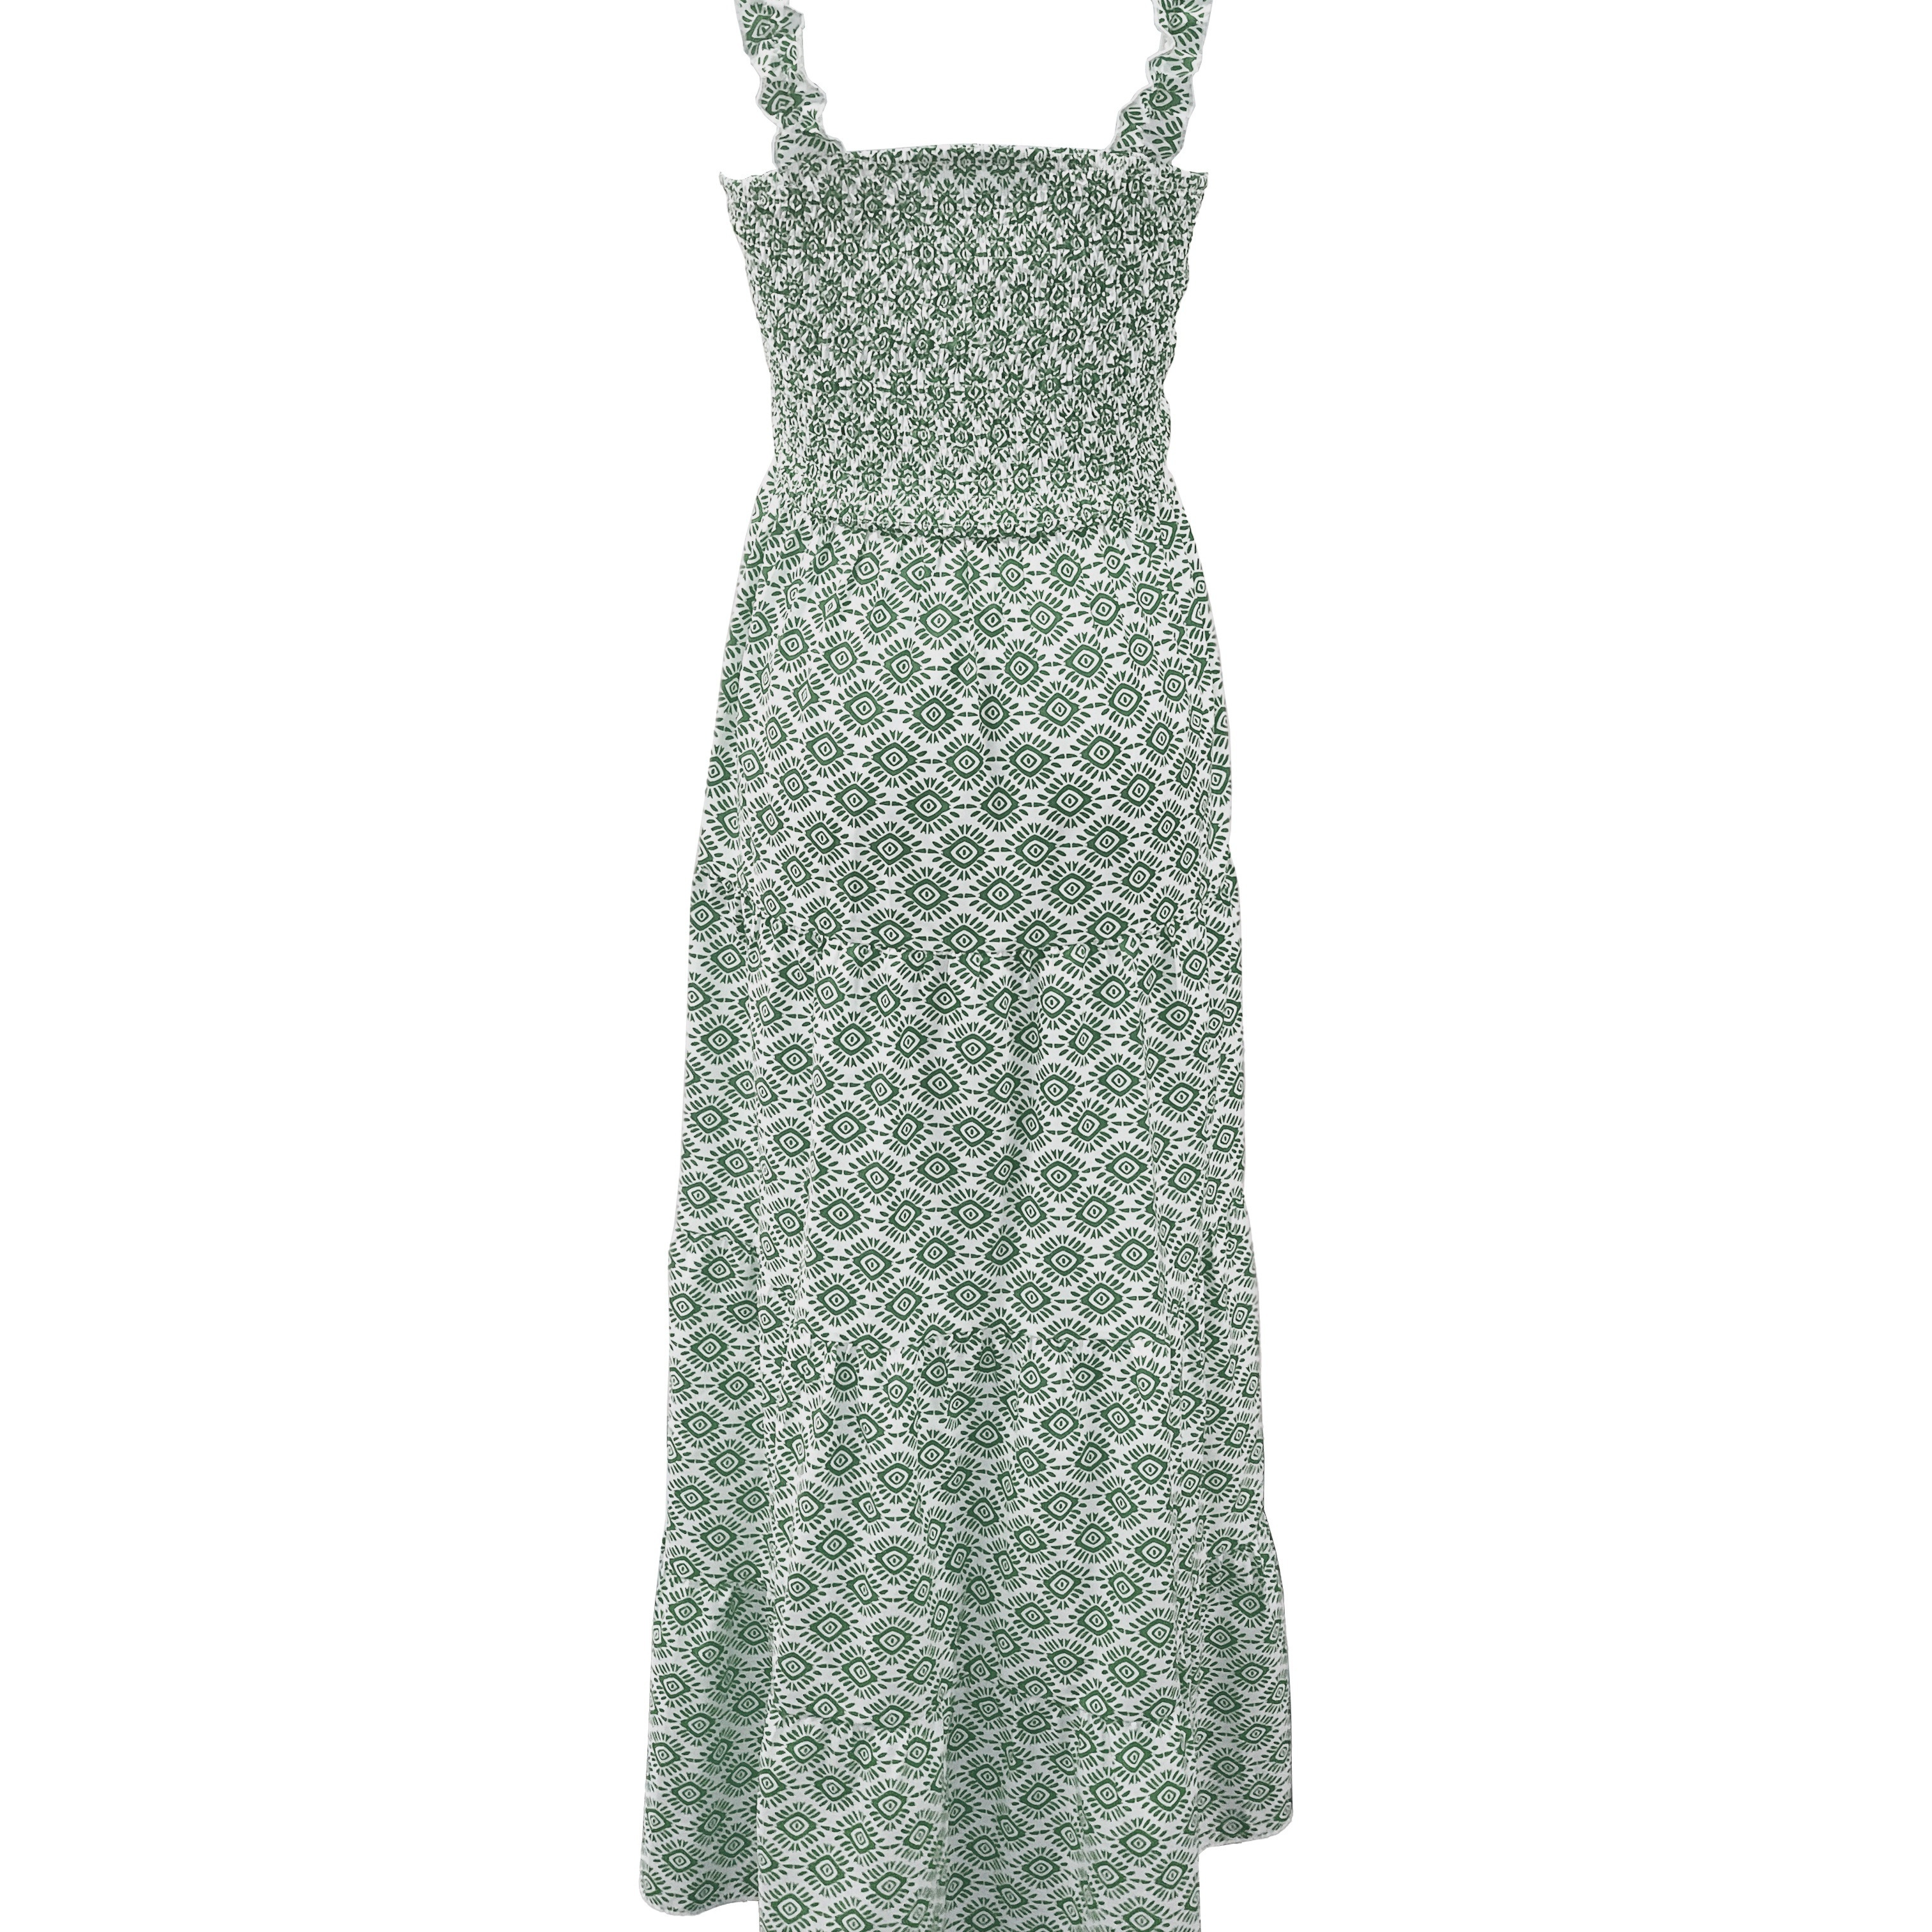 

Allover Print Square Neck Tank Dress, Elegant Sleeveless Aline Dress For Spring & Summer, Women's Clothing